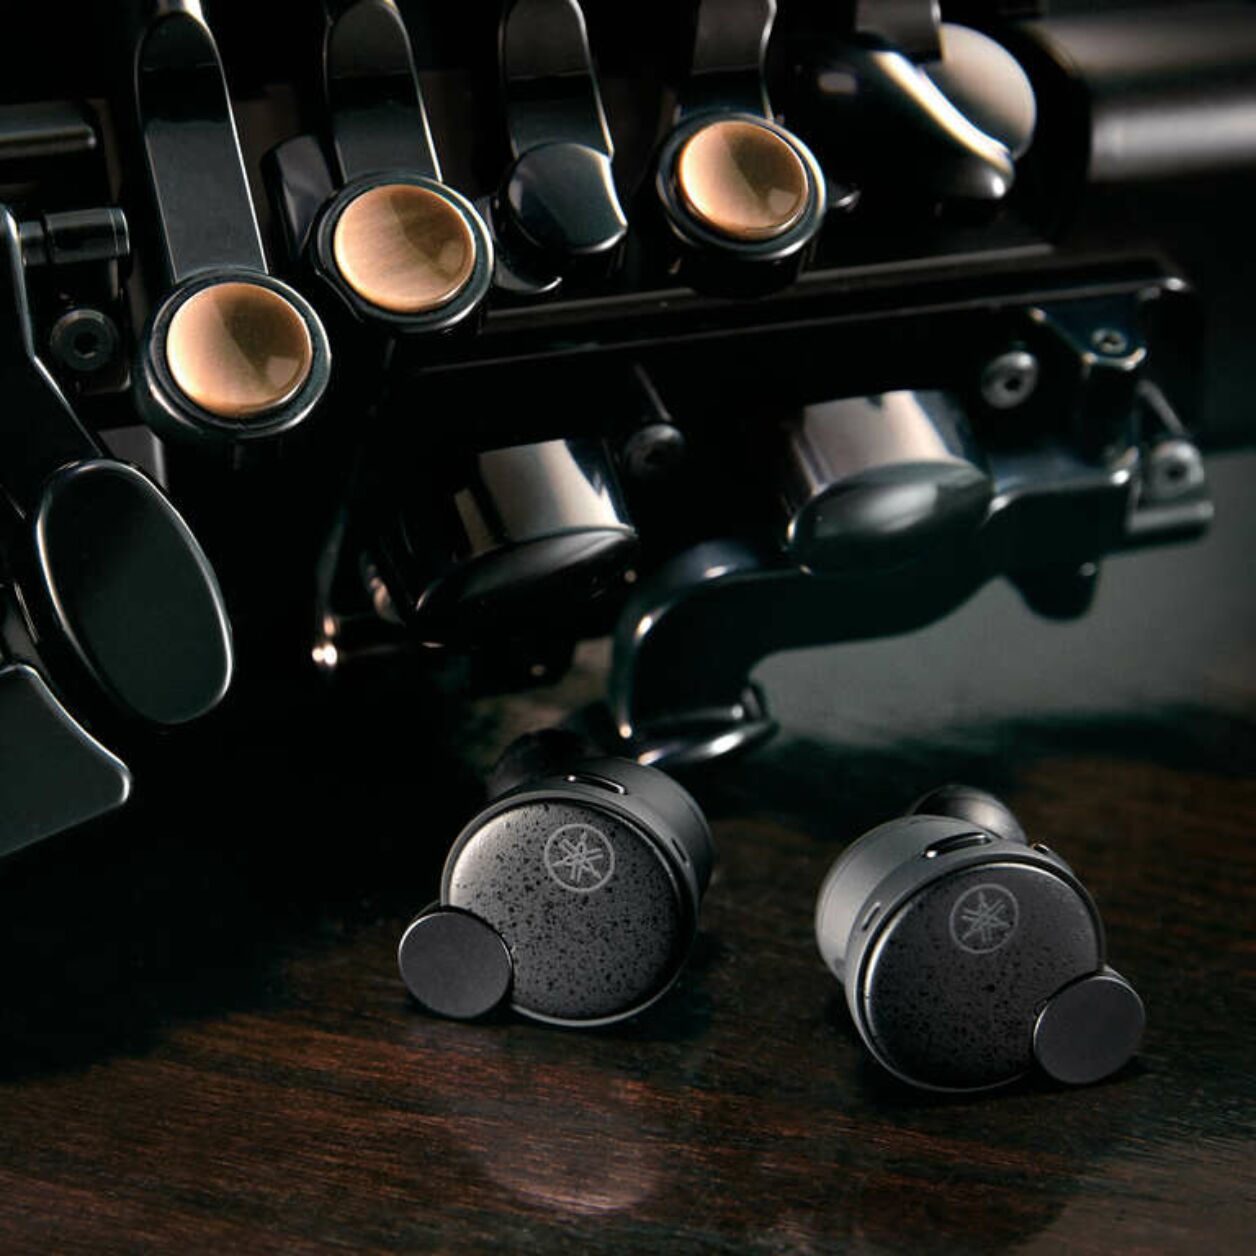 Yamaha lance des écouteurs sans fil TW-E7B avec réduction active du bruit et une série de technologies pour préserver l'audition.